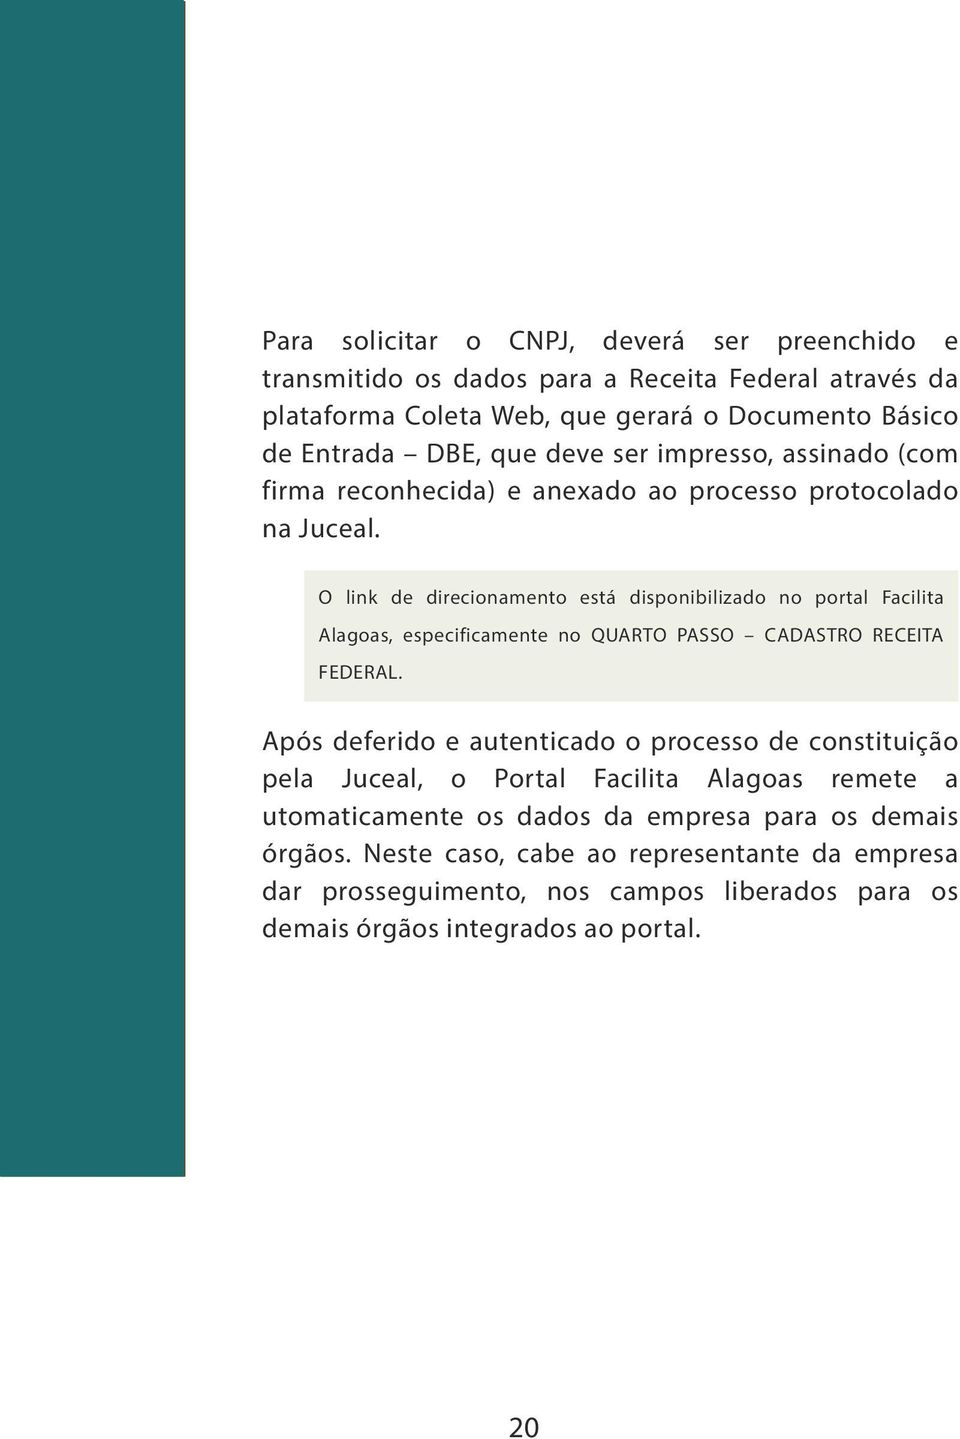 O link de direcionamento está disponibilizado no portal Facilita Alagoas, especificamente no QUARTO PASSO CADASTRO RECEITA FEDERAL.